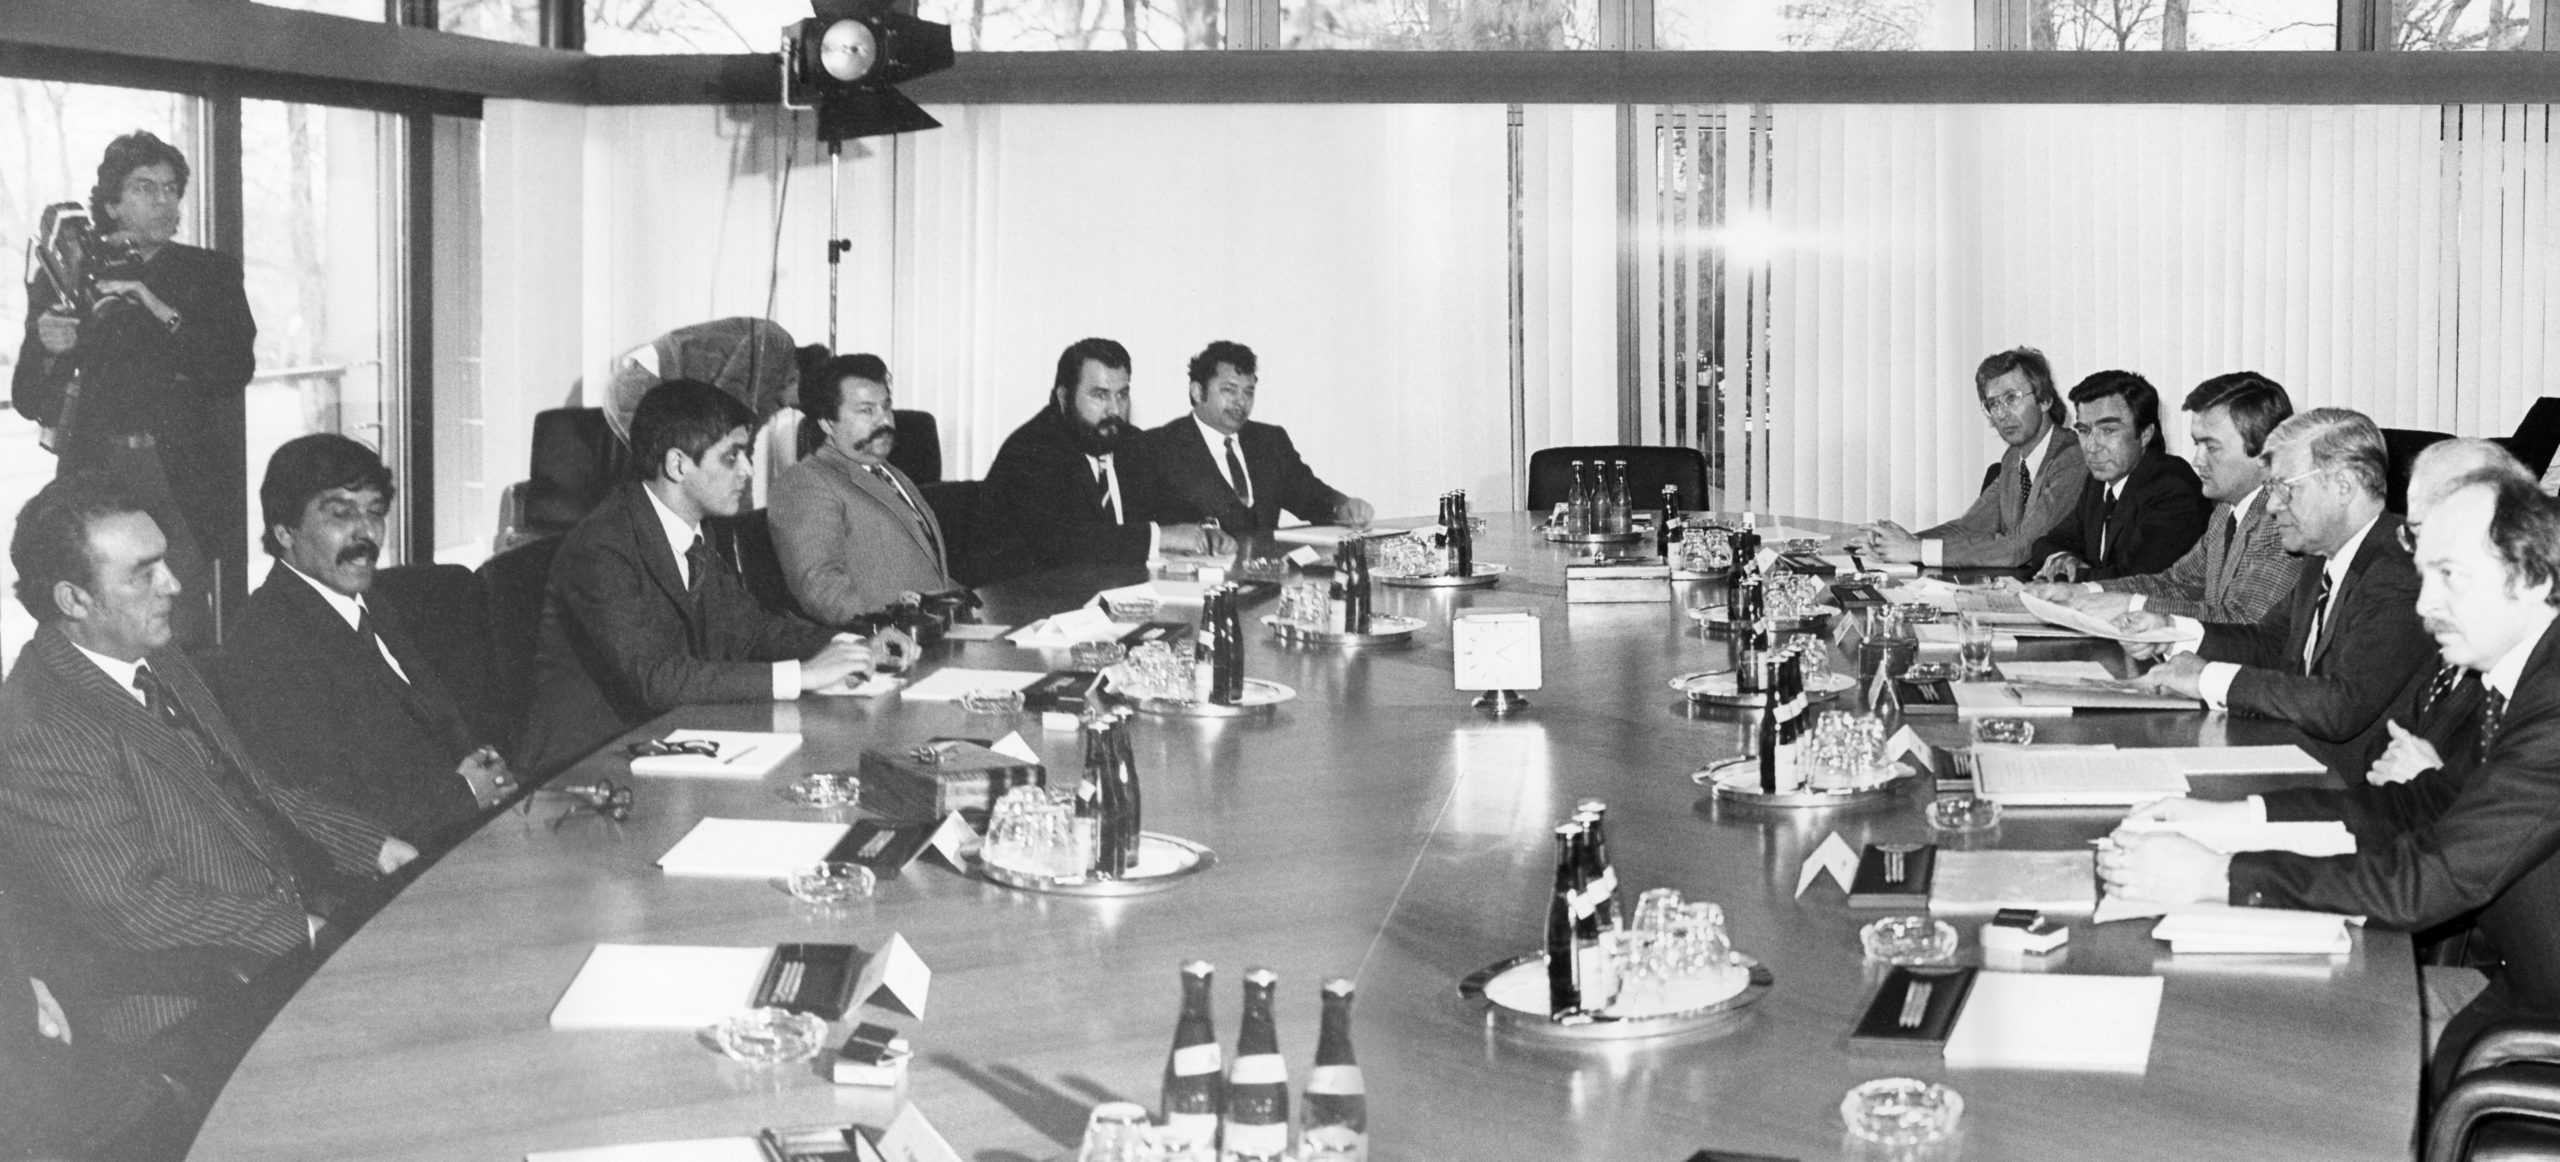 Die Delegation unter Leitung von Romani Rose am 17. März 1982 im Bundeskanzleramt in Bonn bei dem Gespräch mit Bundeskanzler Helmut Schmidt. An einem großen Besprechungstisch sitzen sich links die Delegation und rechts Bundeskanzler Schmidt zusammen mit Vertretern der Bundesreigerung gegenüber.